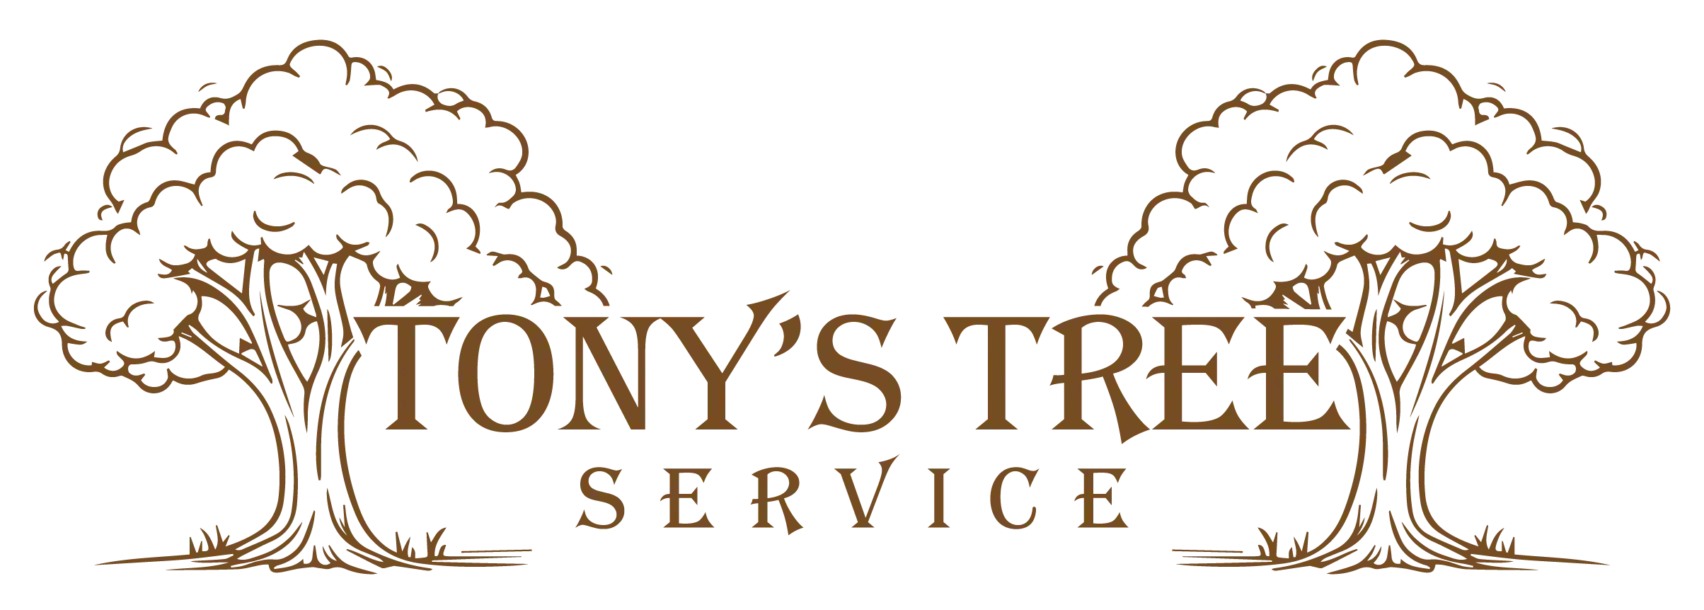 Tonys-tree-service-logo